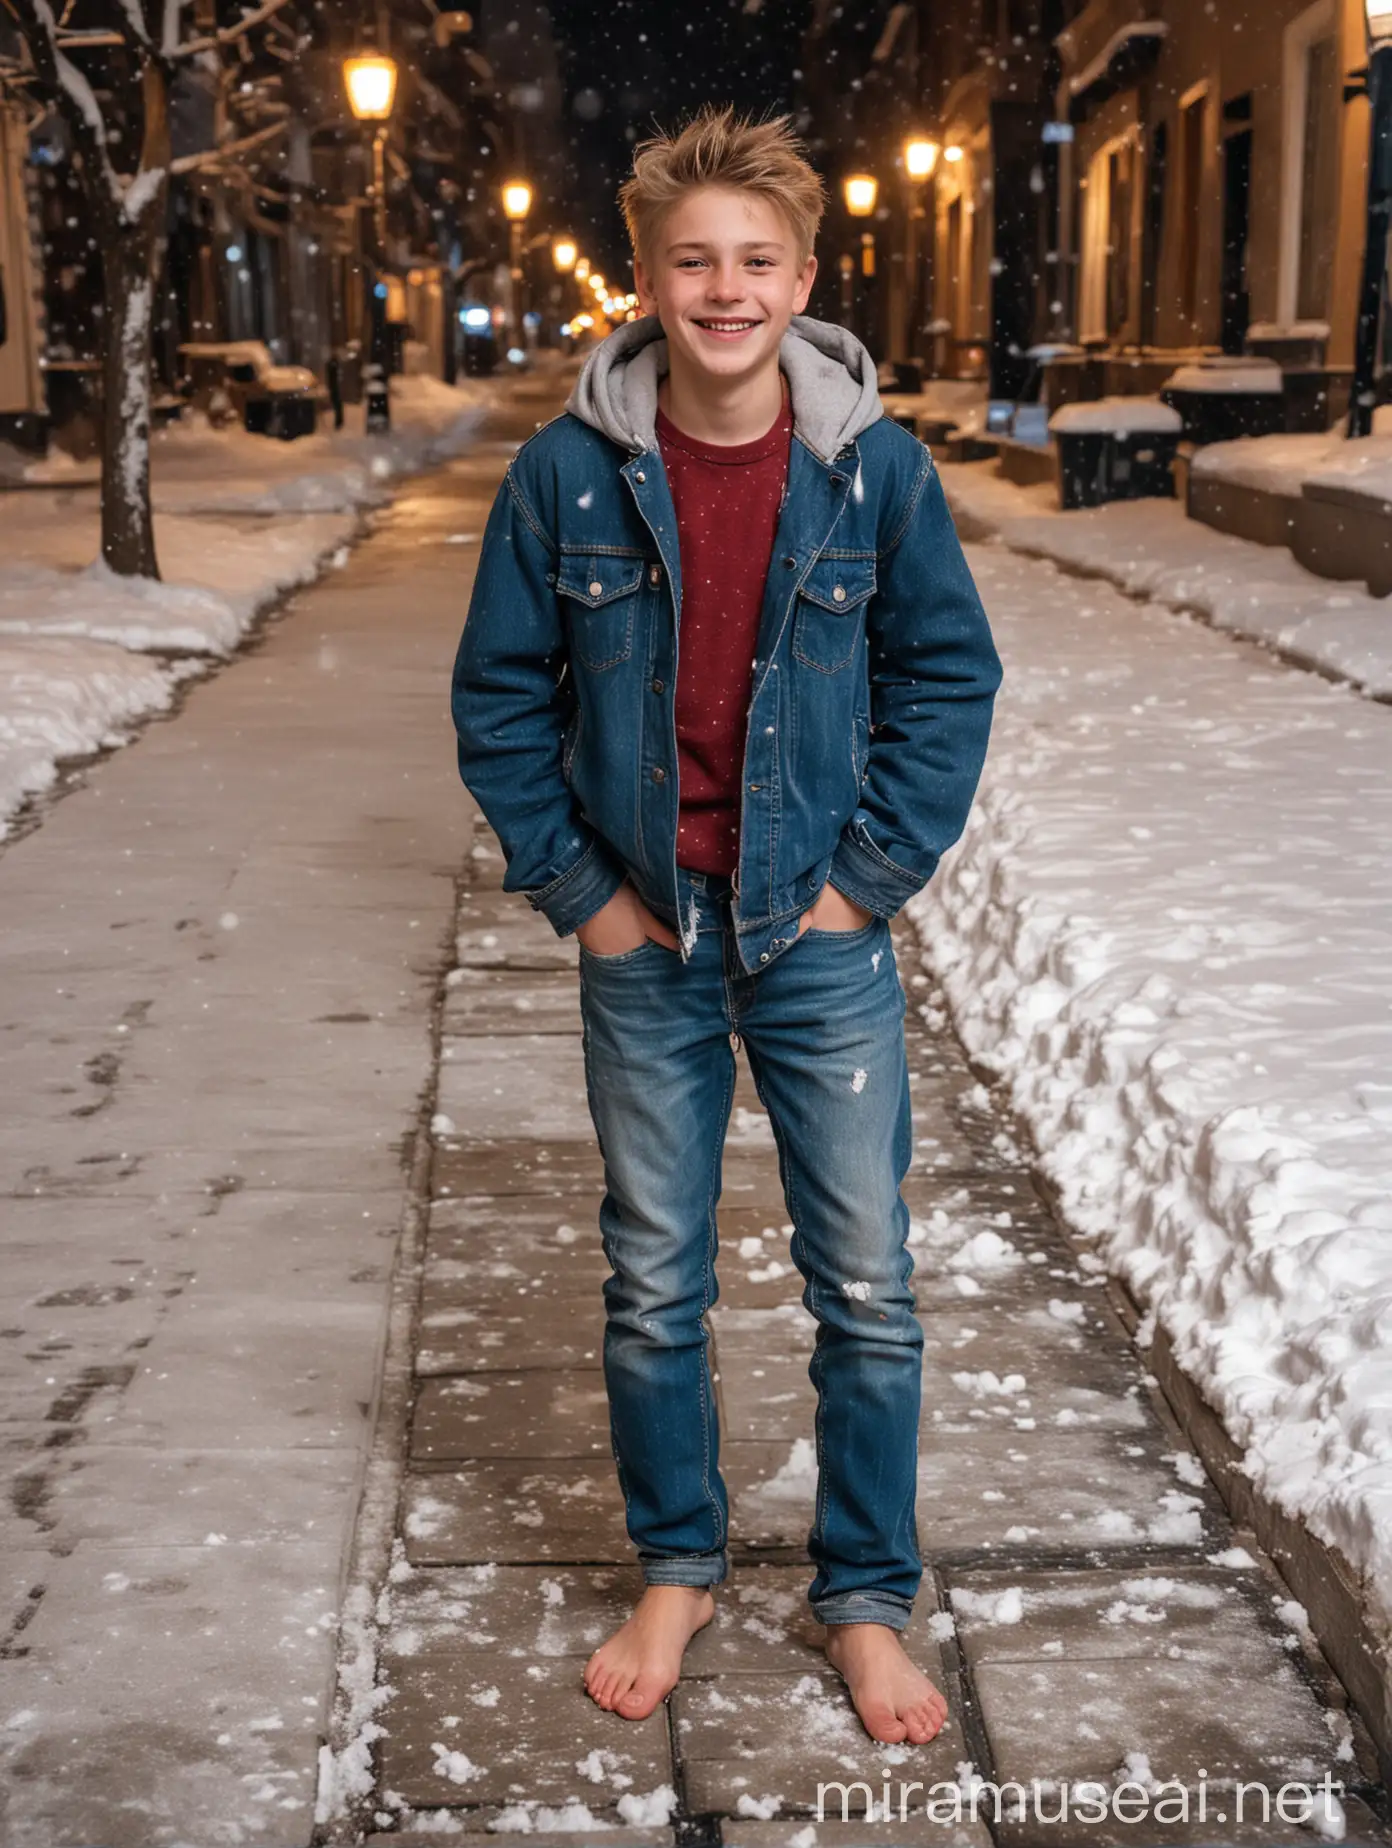 Молодой мальчик босиком, 17 лет, улыбка, светлые волосы, джинсы босиком, босые ноги. Закаливание босиком по снегу. Город, снег, зима, дорога из плитки. Вечер, фонари